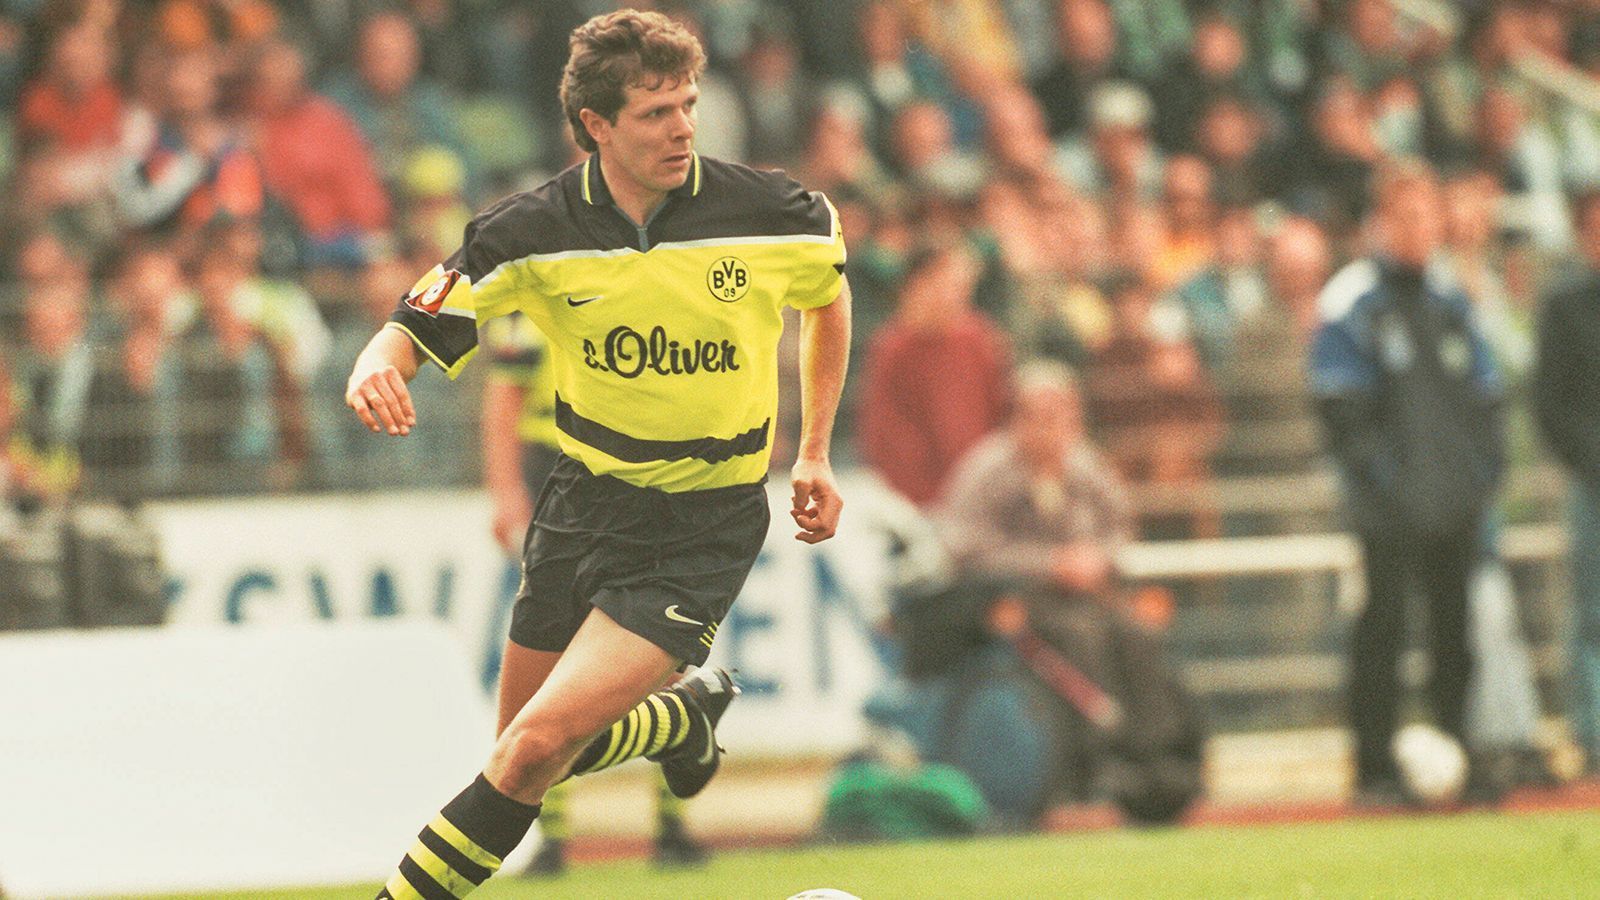 
                <strong>Zentrales Mittelfeld: Andreas Möller</strong><br>
                Andreas Möller spielte für beide Ruhrpott-Rivalen und wechselte im Jahr 2000 nach sechs Jahren von Dortmund zum FC Schalke 04. Allein wegen dieser Tatsache würden ihn die meisten BVB-Fans wahrscheinlich nicht in diese Legenden-Elf wählen. Doch der KI ist das egal. Im Jahr 2004 beendete Möller seine Karriere bei Eintracht Frankfurt, wo er danach auch als Leiter der Nachwuchsabteilung aktiv war.
              